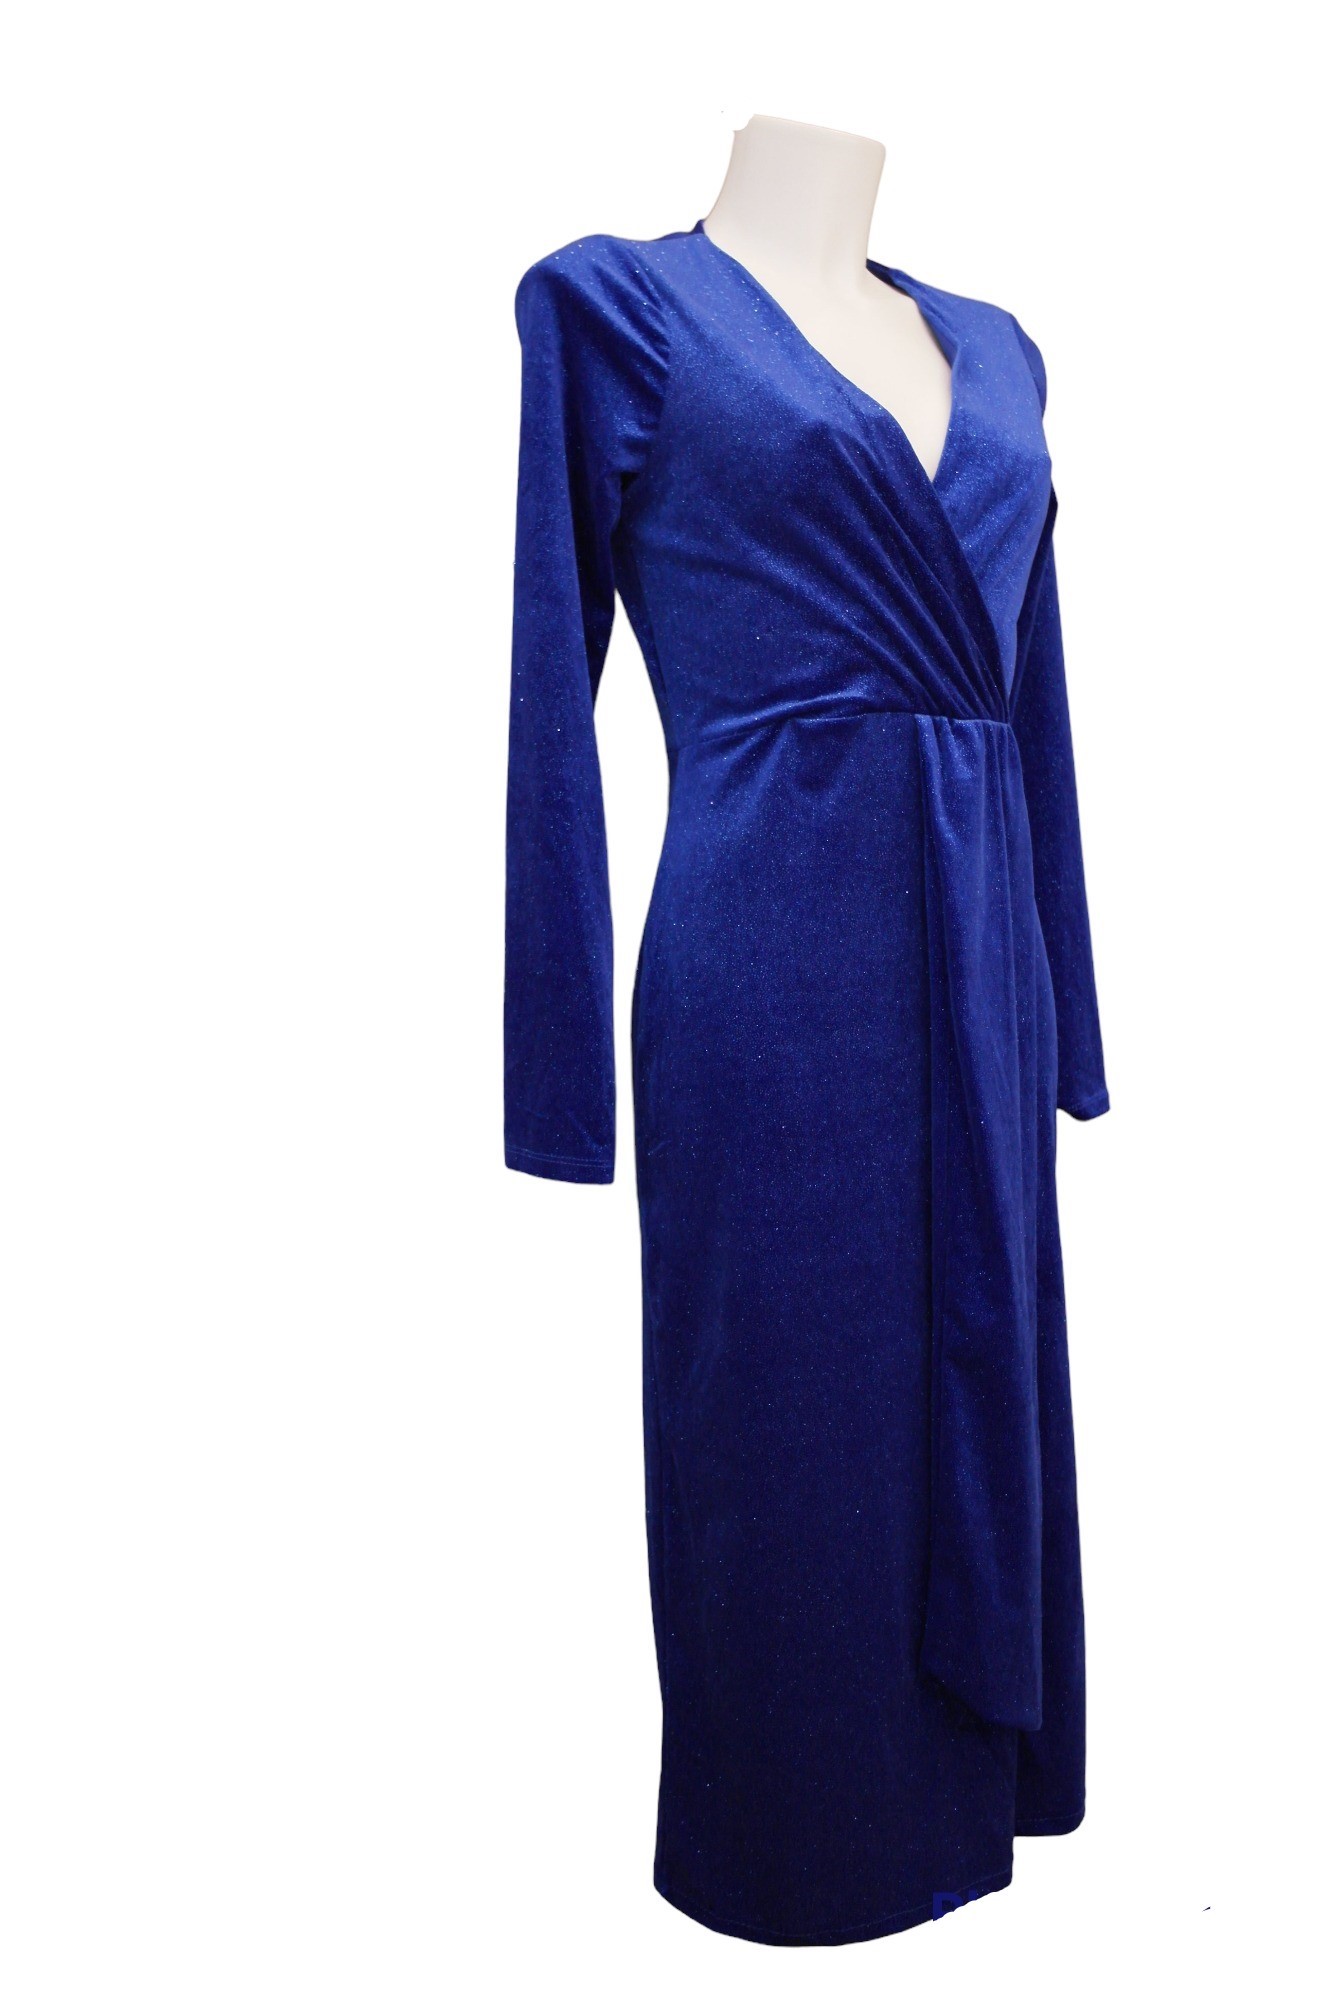 Φόρεμα Βελούδινο ζιβάγκο Μίντι Μαύ΄ρο BQA2203